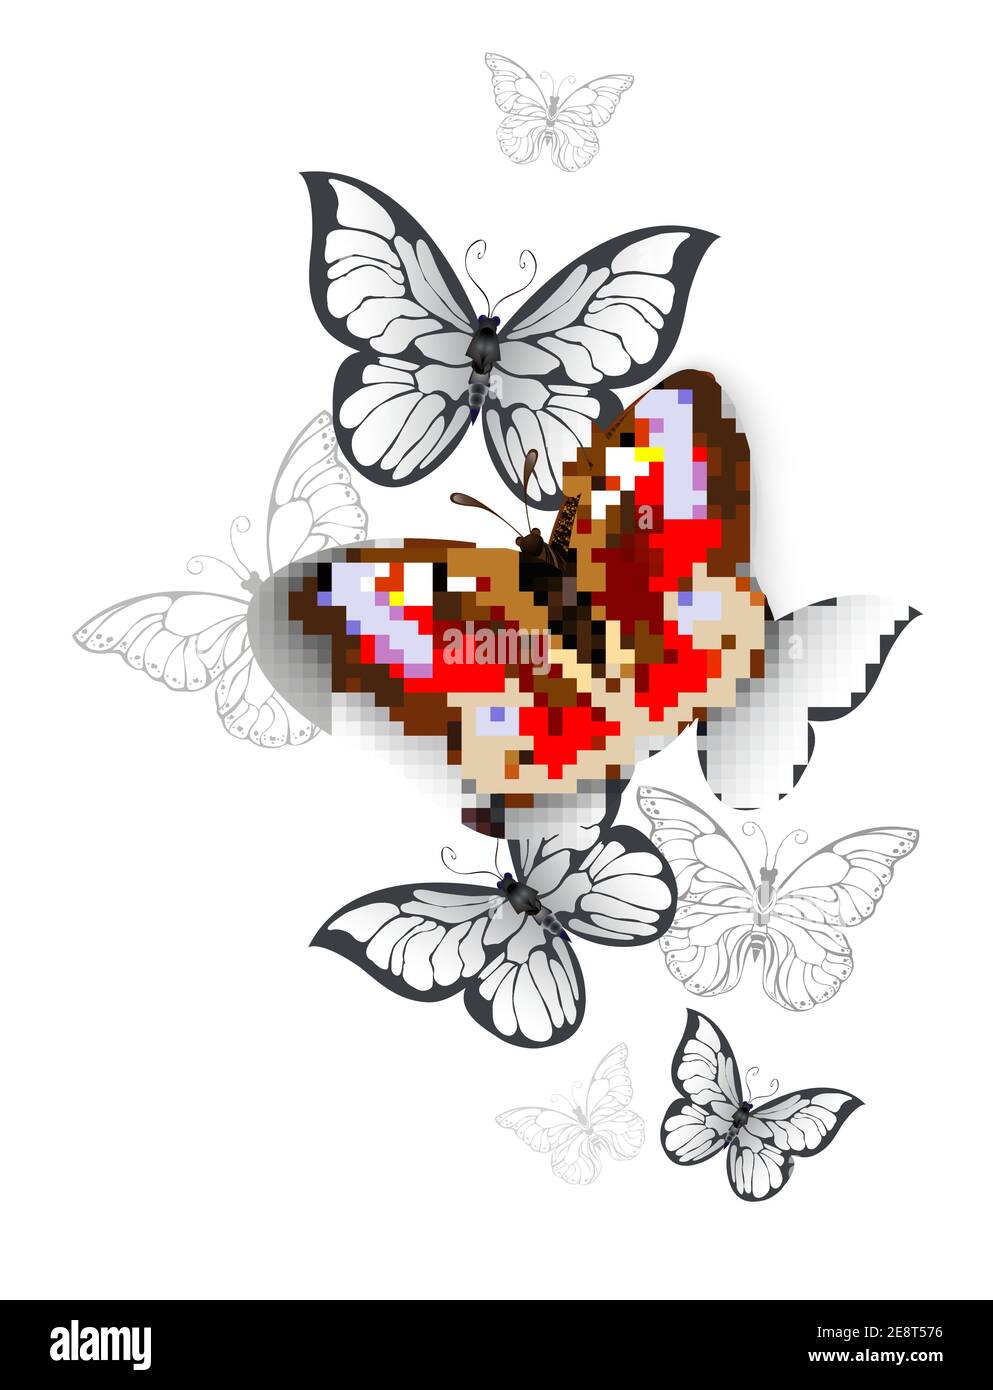 Farfalla di pavone rosso volante, realistica e testurizzata e farfalle bianche e grigie su sfondo bianco. Illustrazione Vettoriale